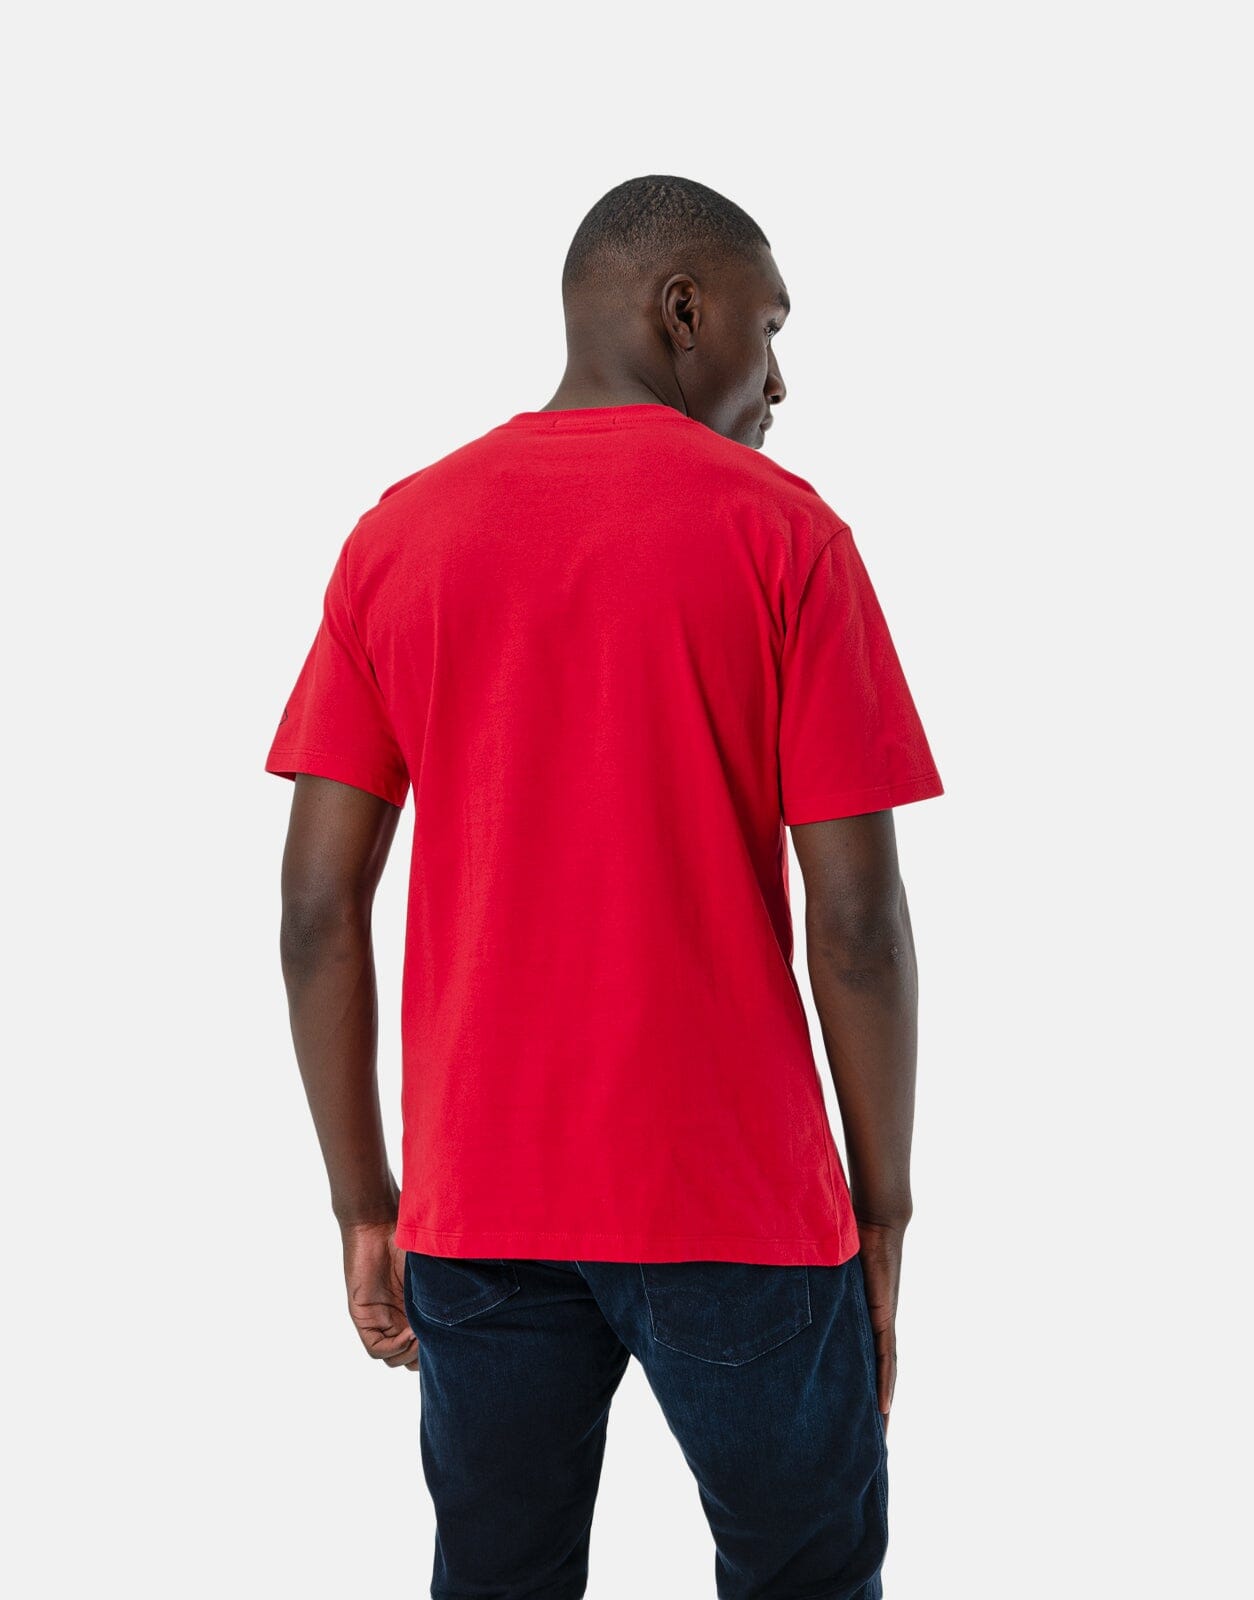 Replay Large Logo Red T-Shirt - Subwear